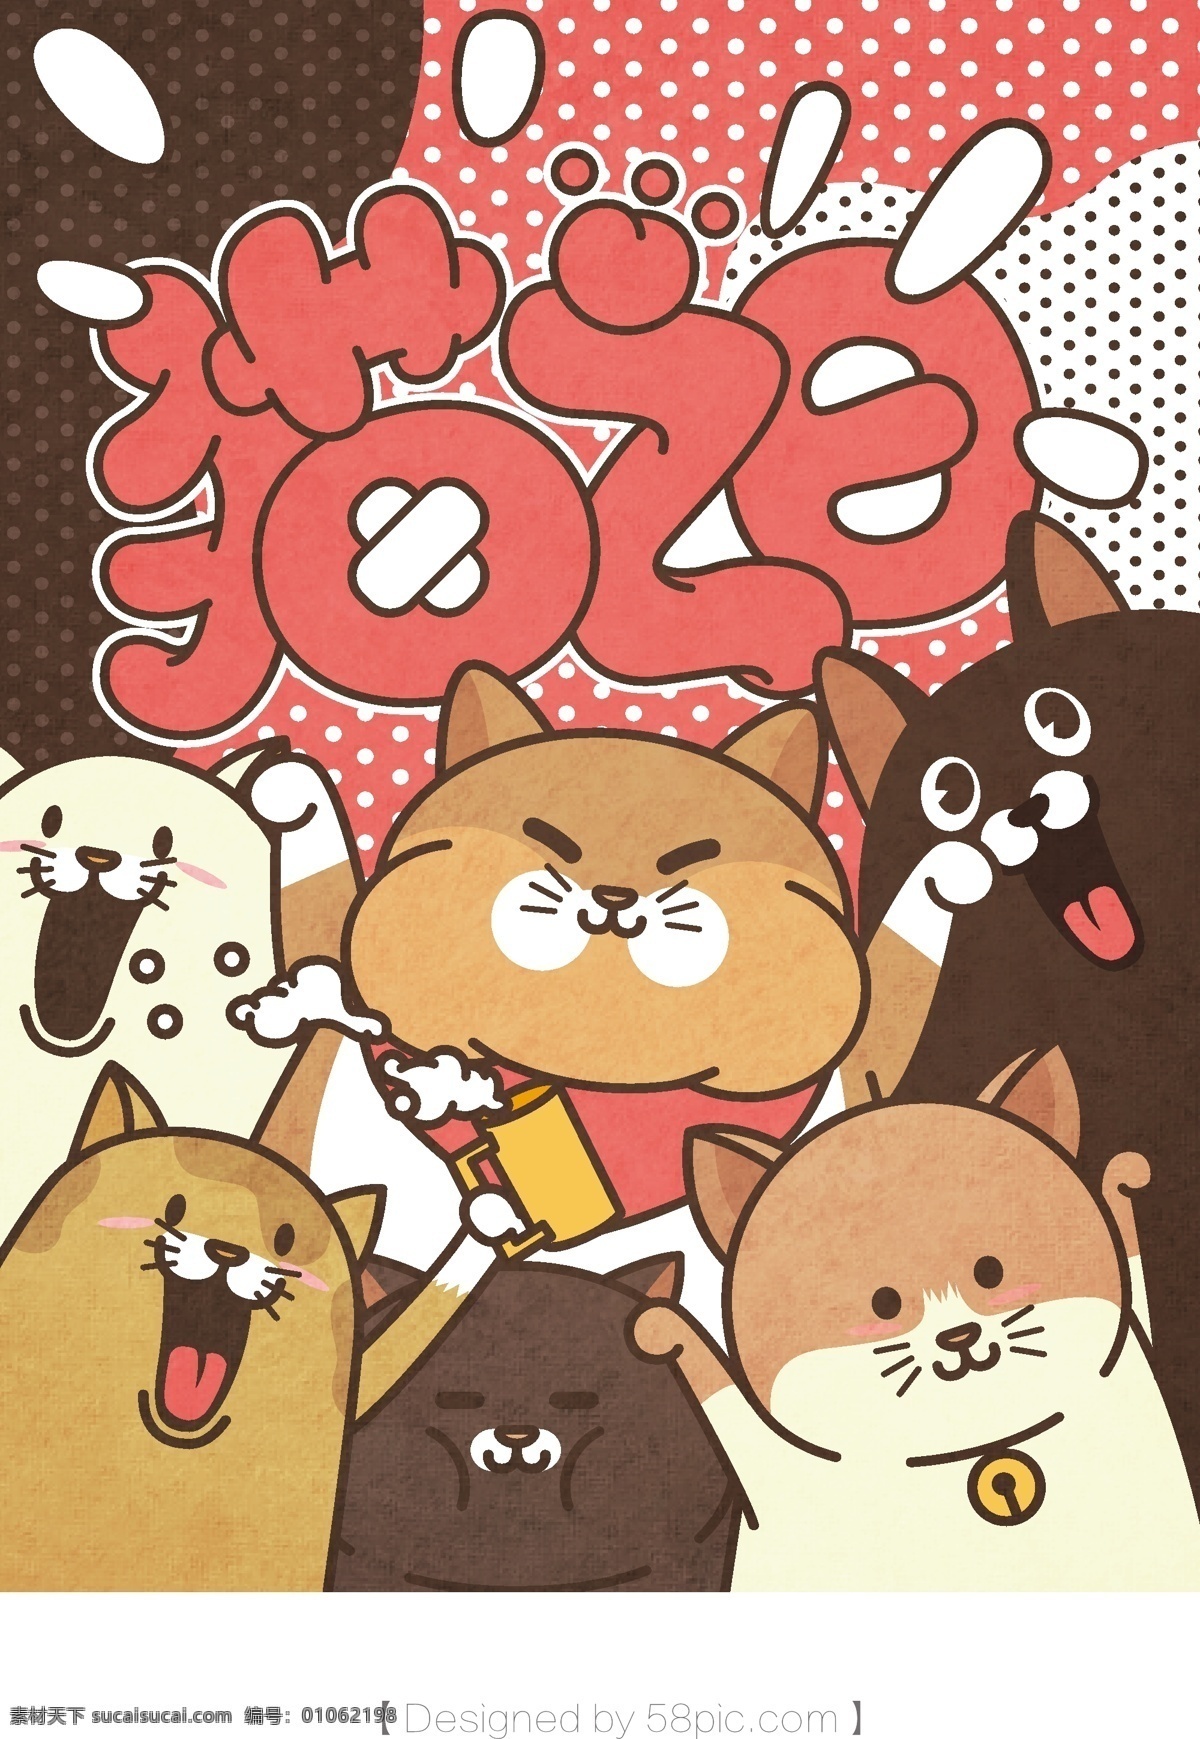 猫 日 系列 插画 节日 庆祝 猫之日 卡通猫 可爱 可爱猫 宠物 治愈 治愈系插画 小清新 卡通 矢量插画